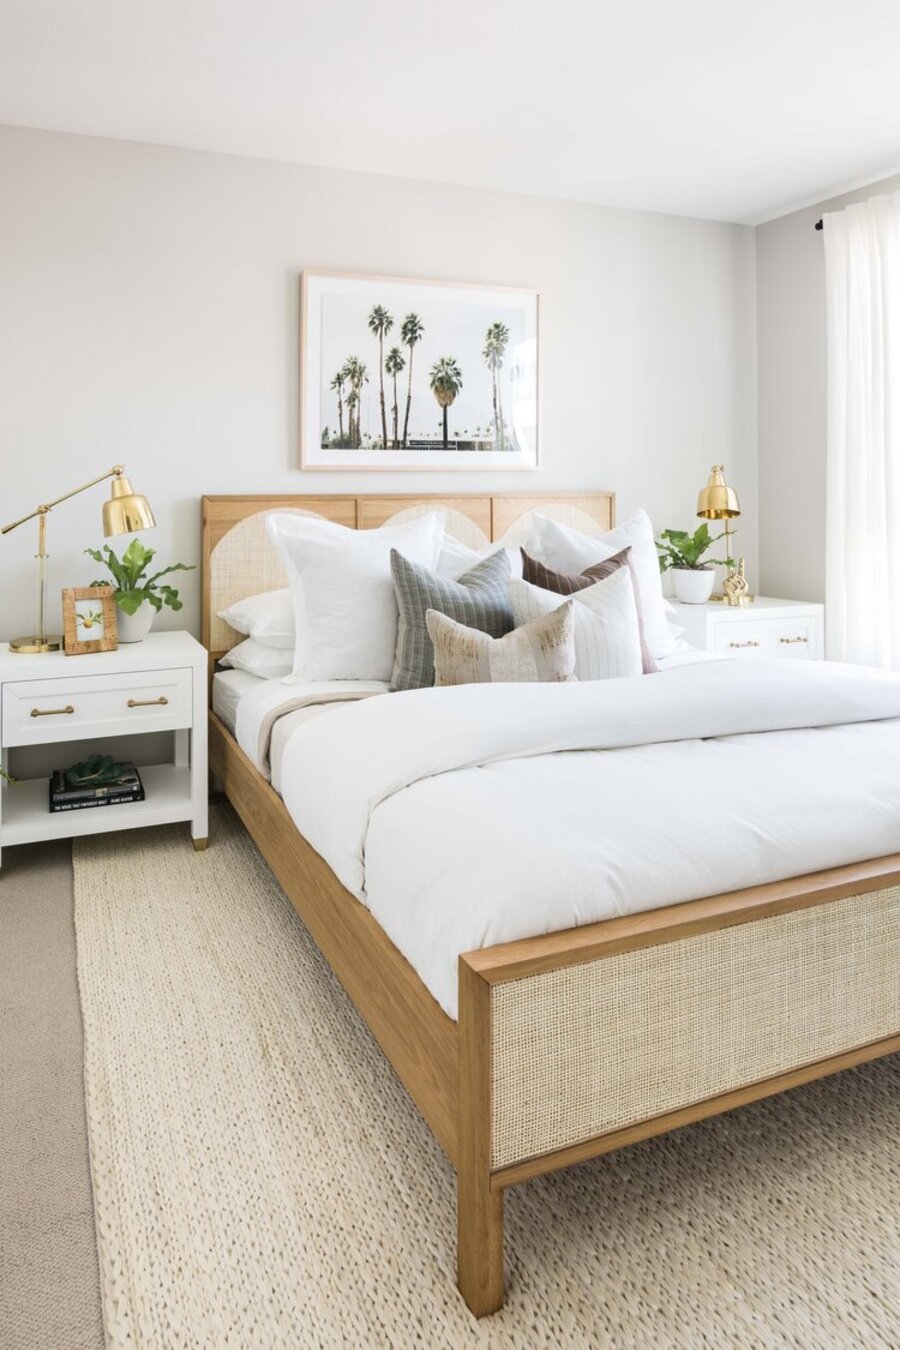 Dormitorio estilo boho chic, con una cama de madera y respaldo de fibras naturales, veladores blancos y lámparas de mesa dorados.